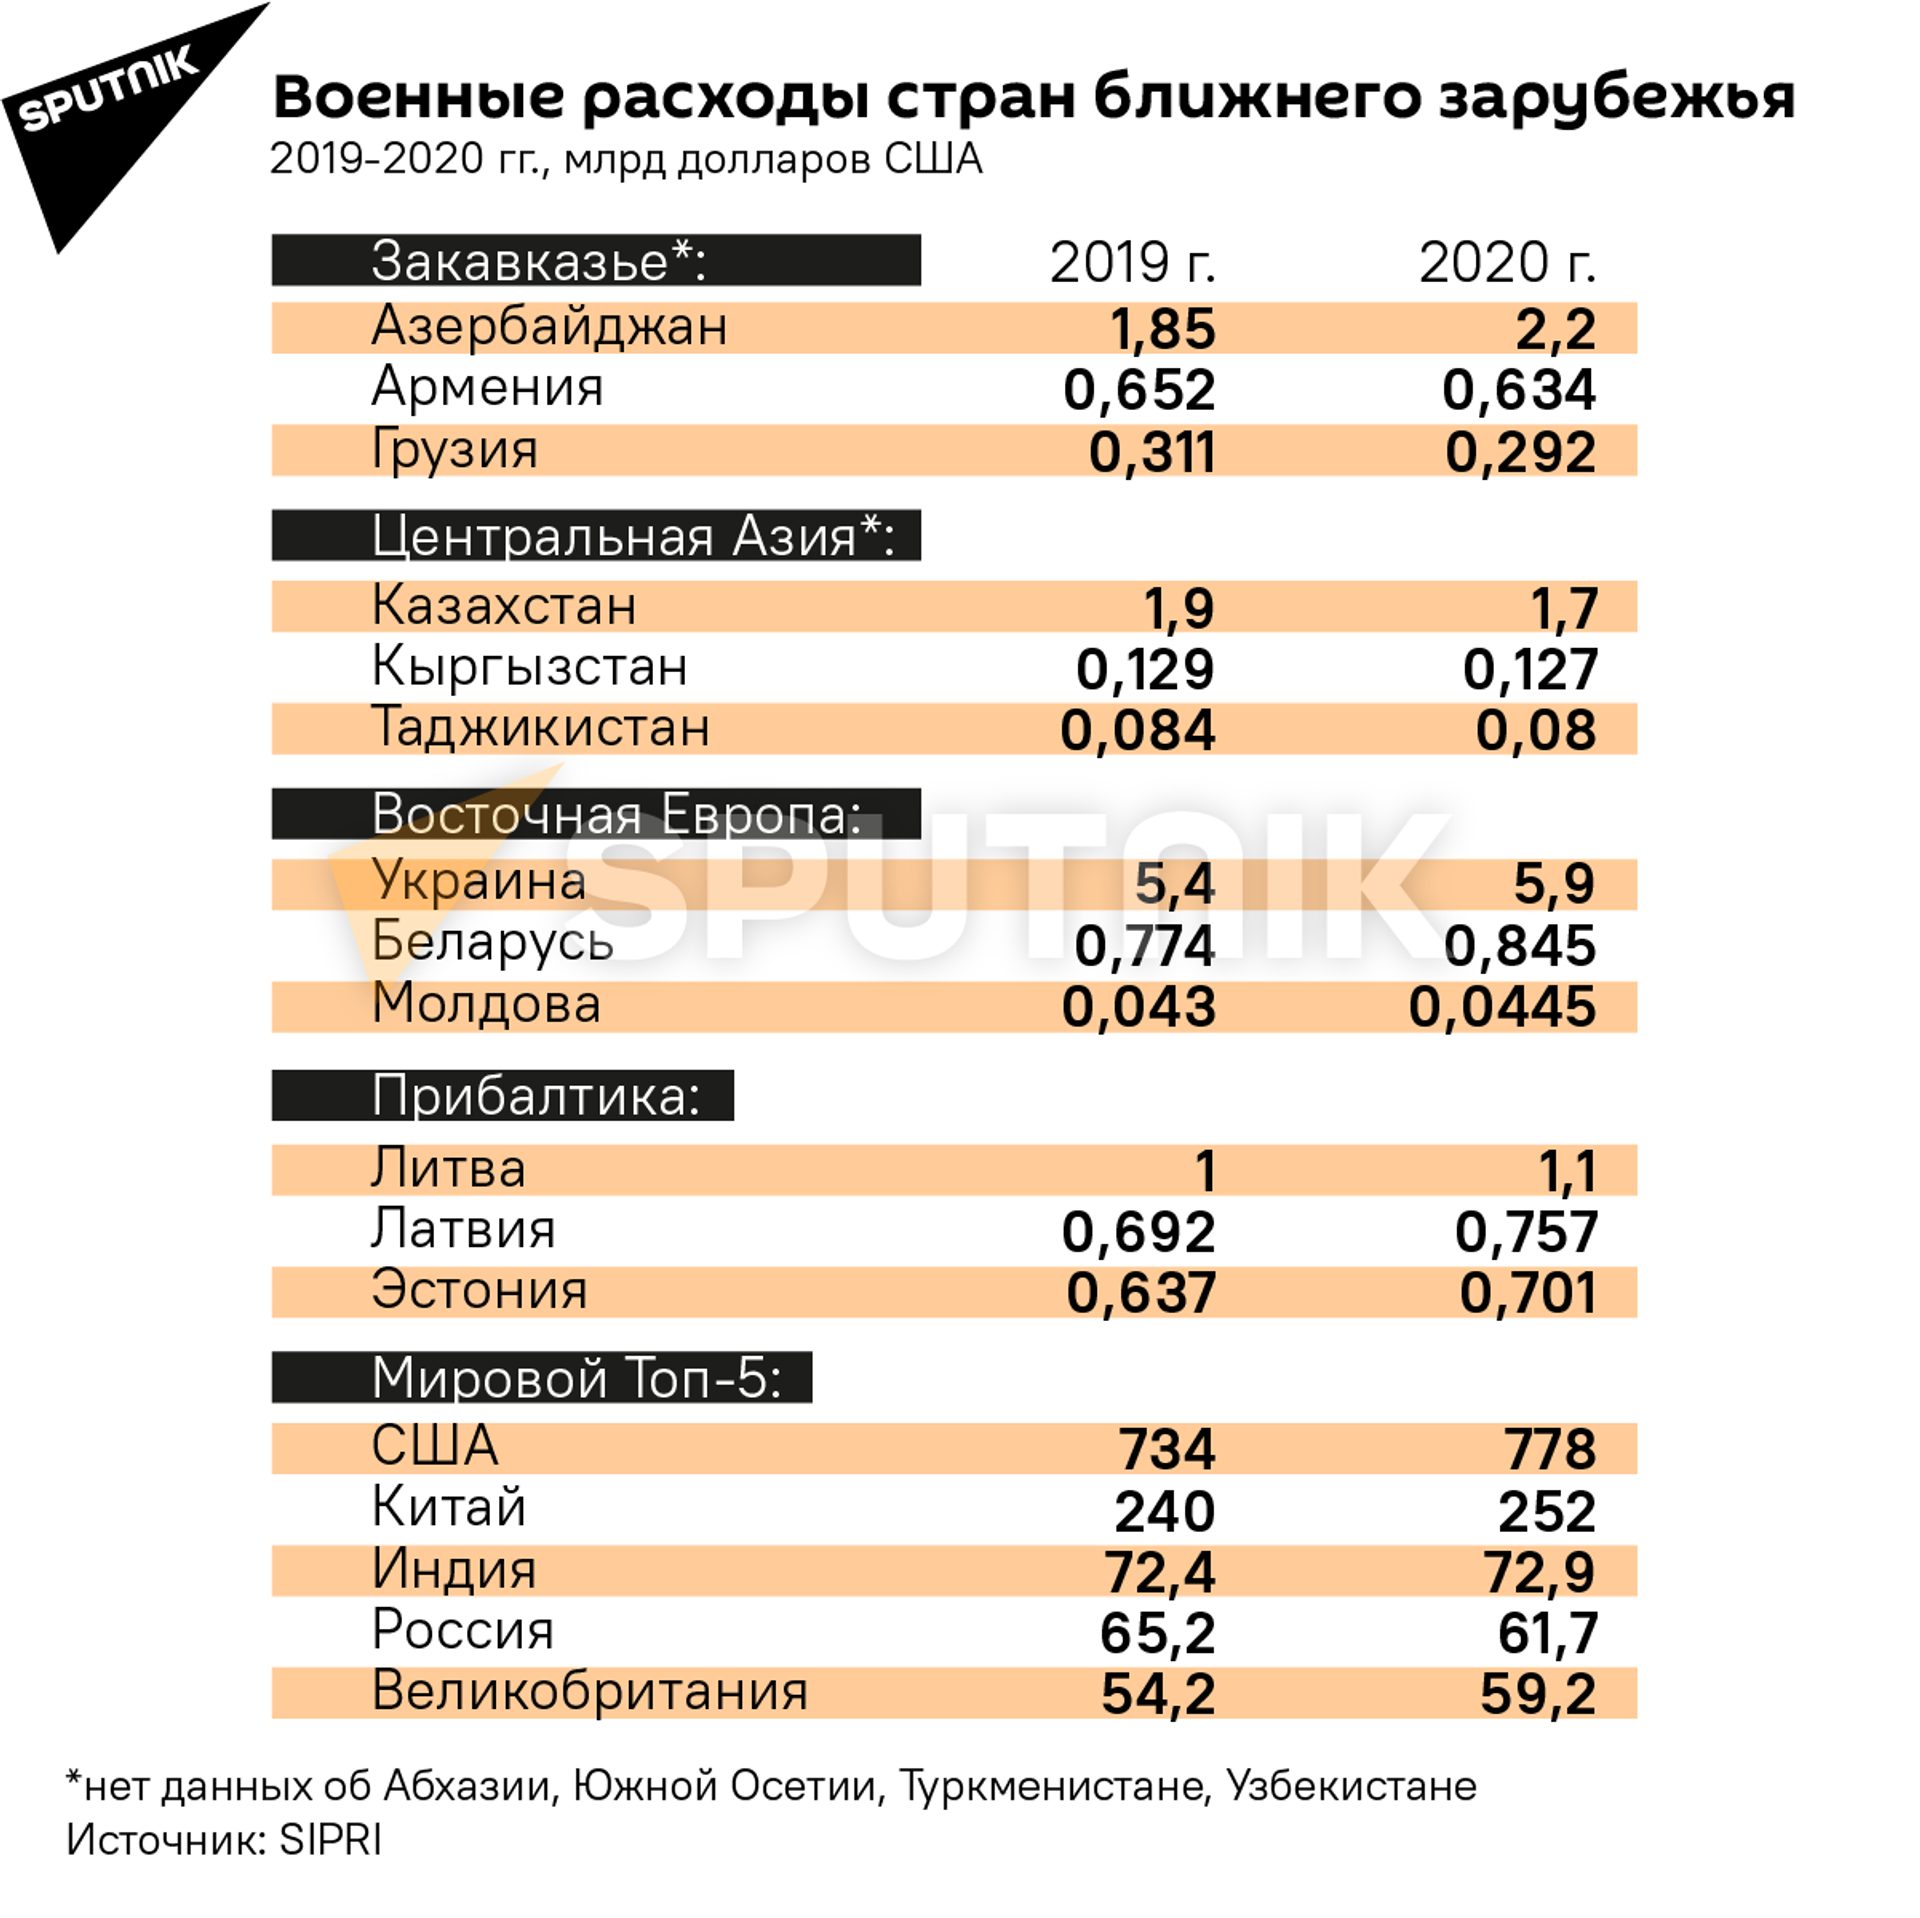 Доллары милитаризации: какие страны повышают военные расходы? - Sputnik Южная Осетия, 1920, 27.04.2021